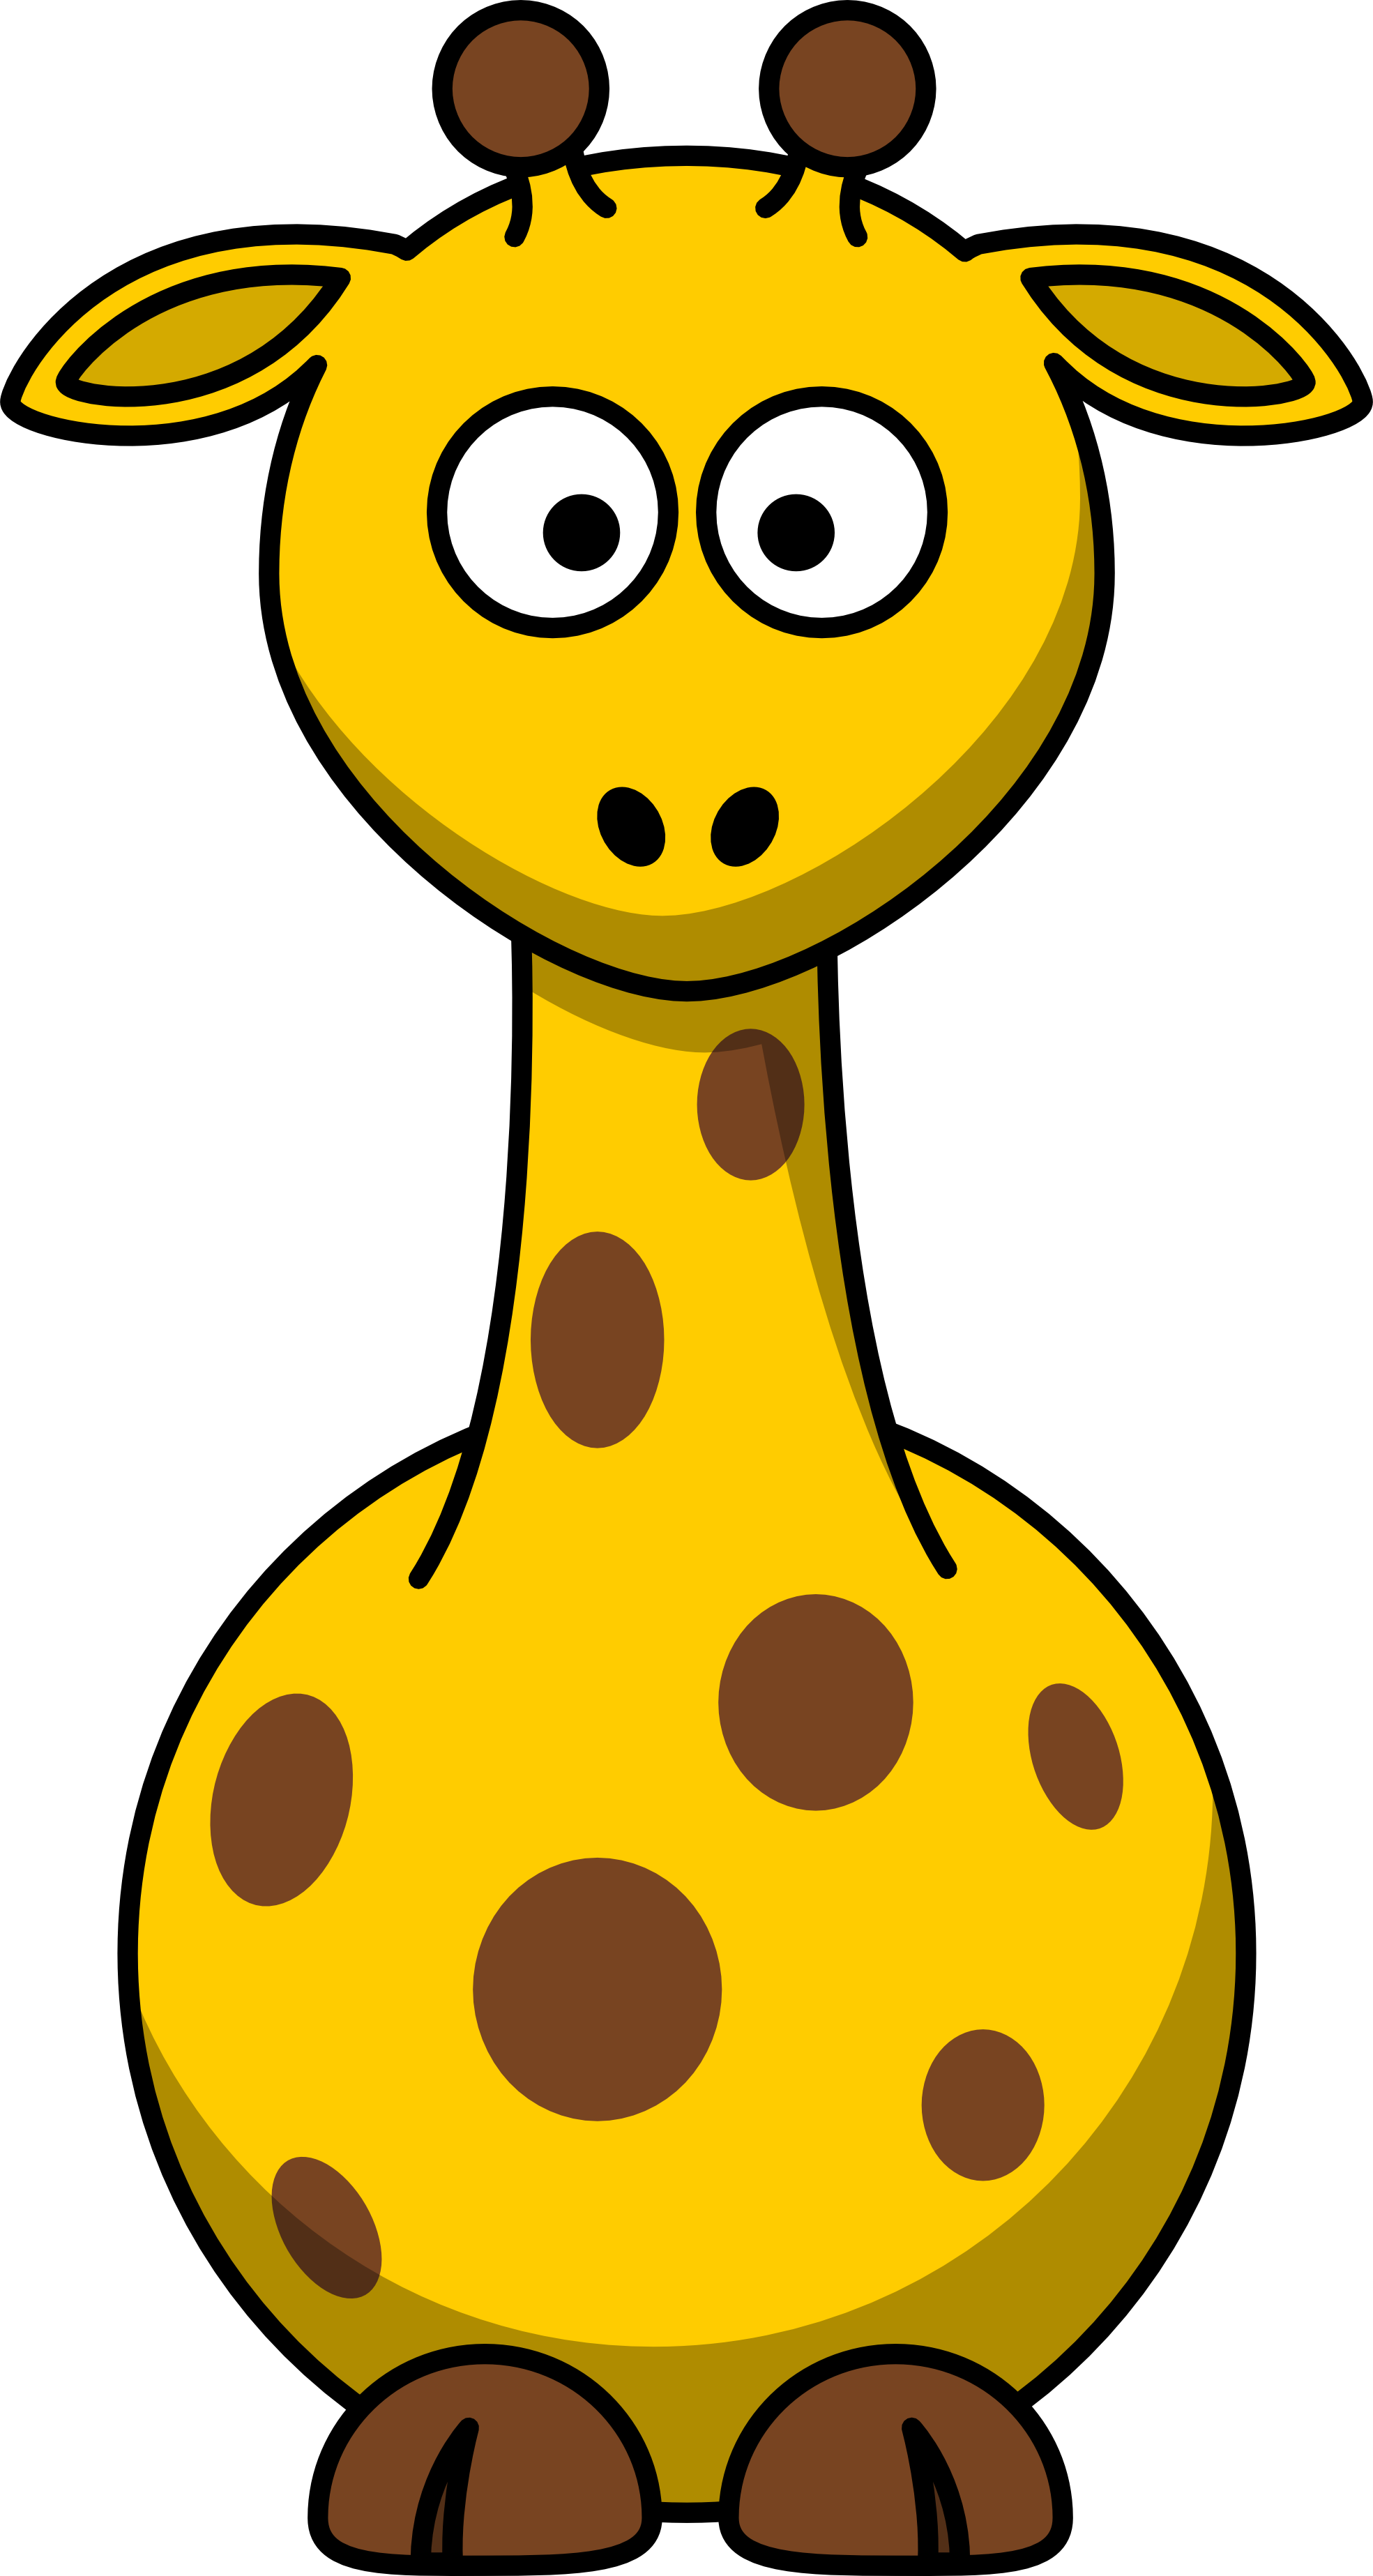 leg clipart giraffe